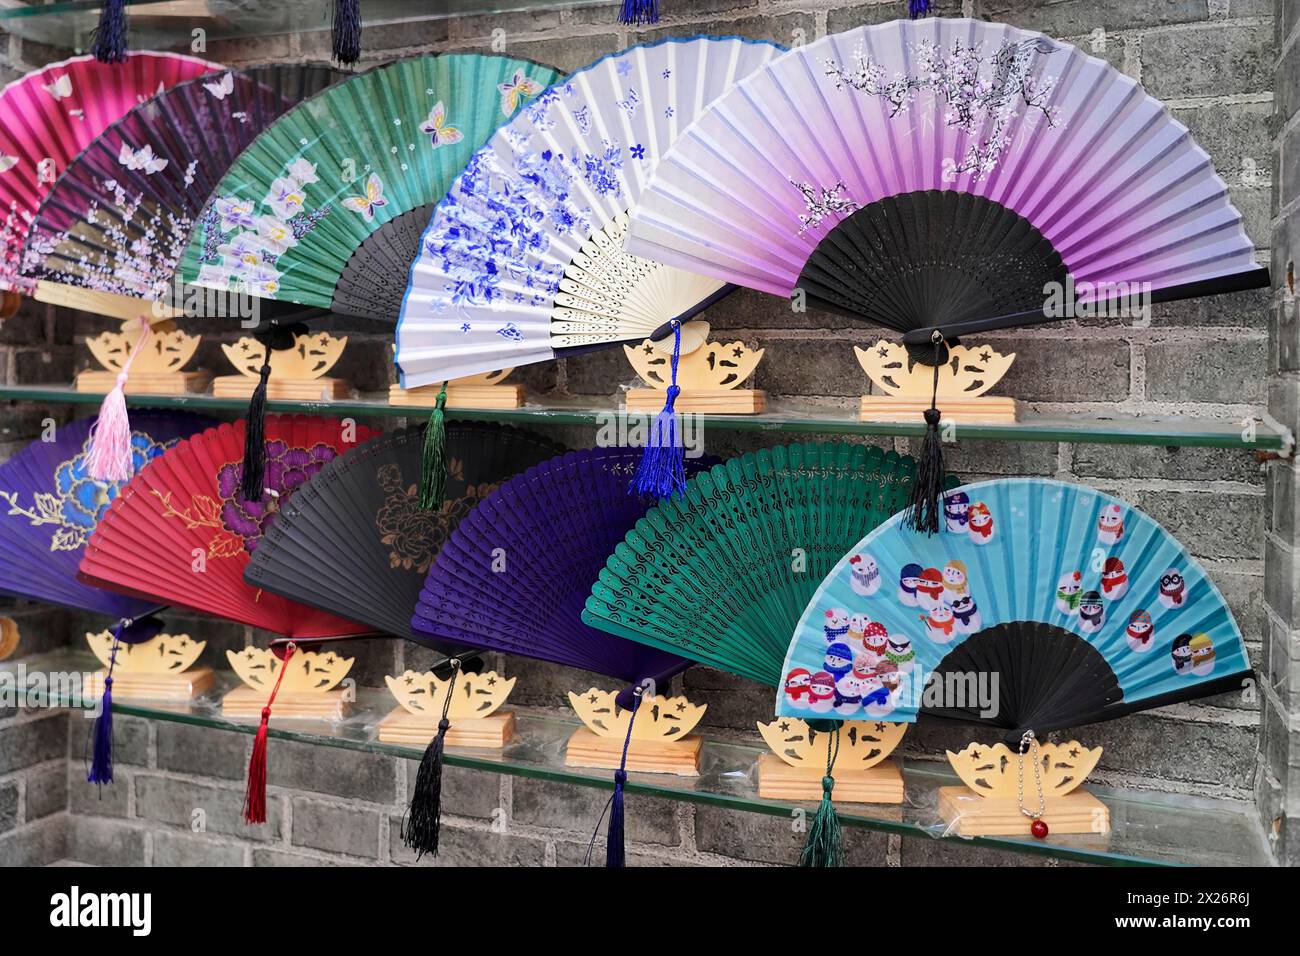 Promenez-vous dans le quartier restauré de Tianzifang, Une sélection de ventilateurs colorés et décoratifs exposés sur un mur comme souvenirs, Shanghai, Chine Banque D'Images